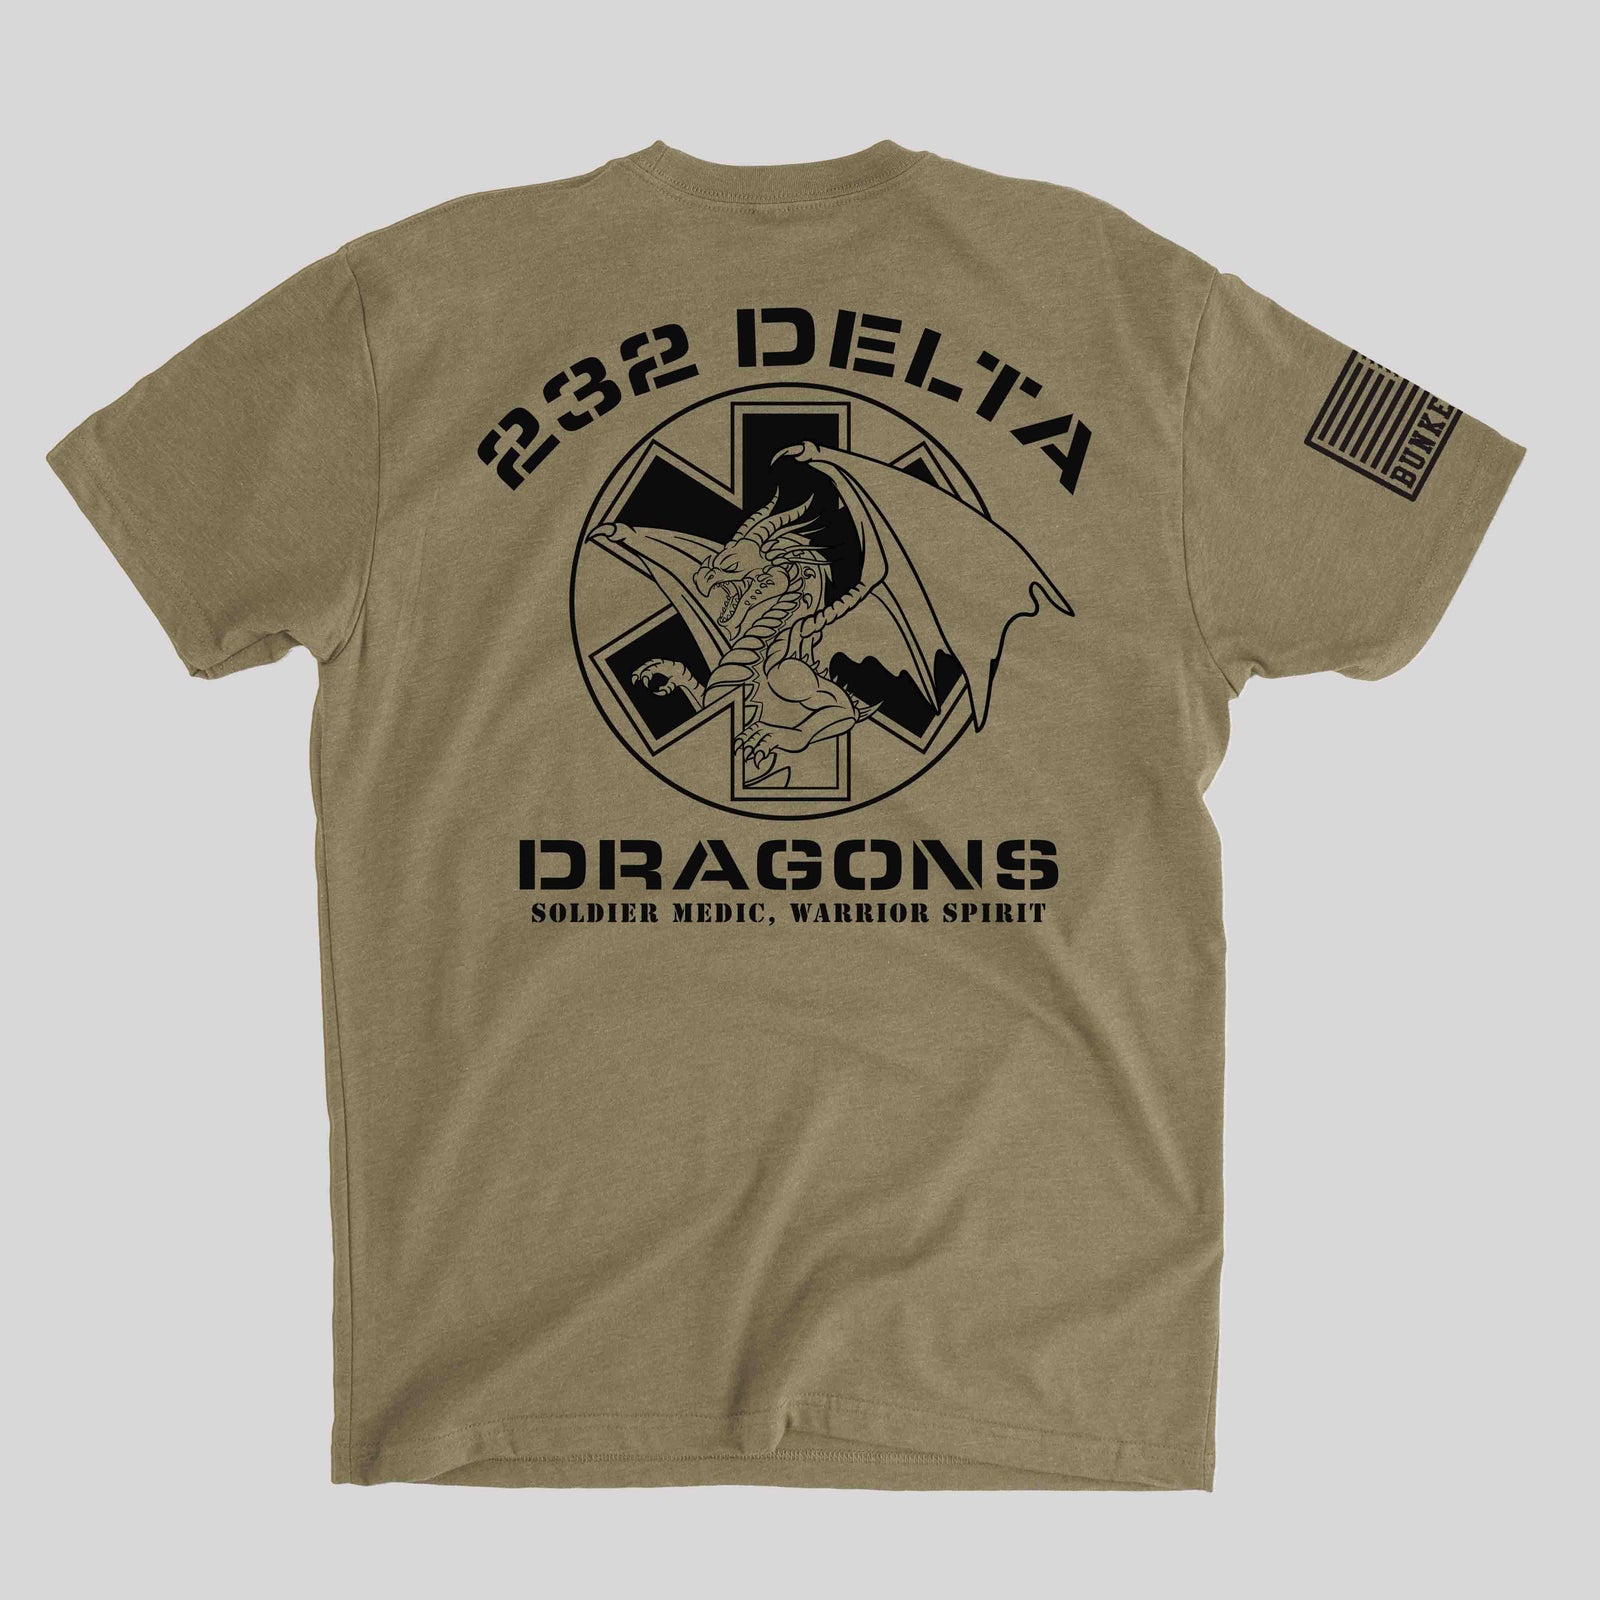 232 Delta Company - Dragons